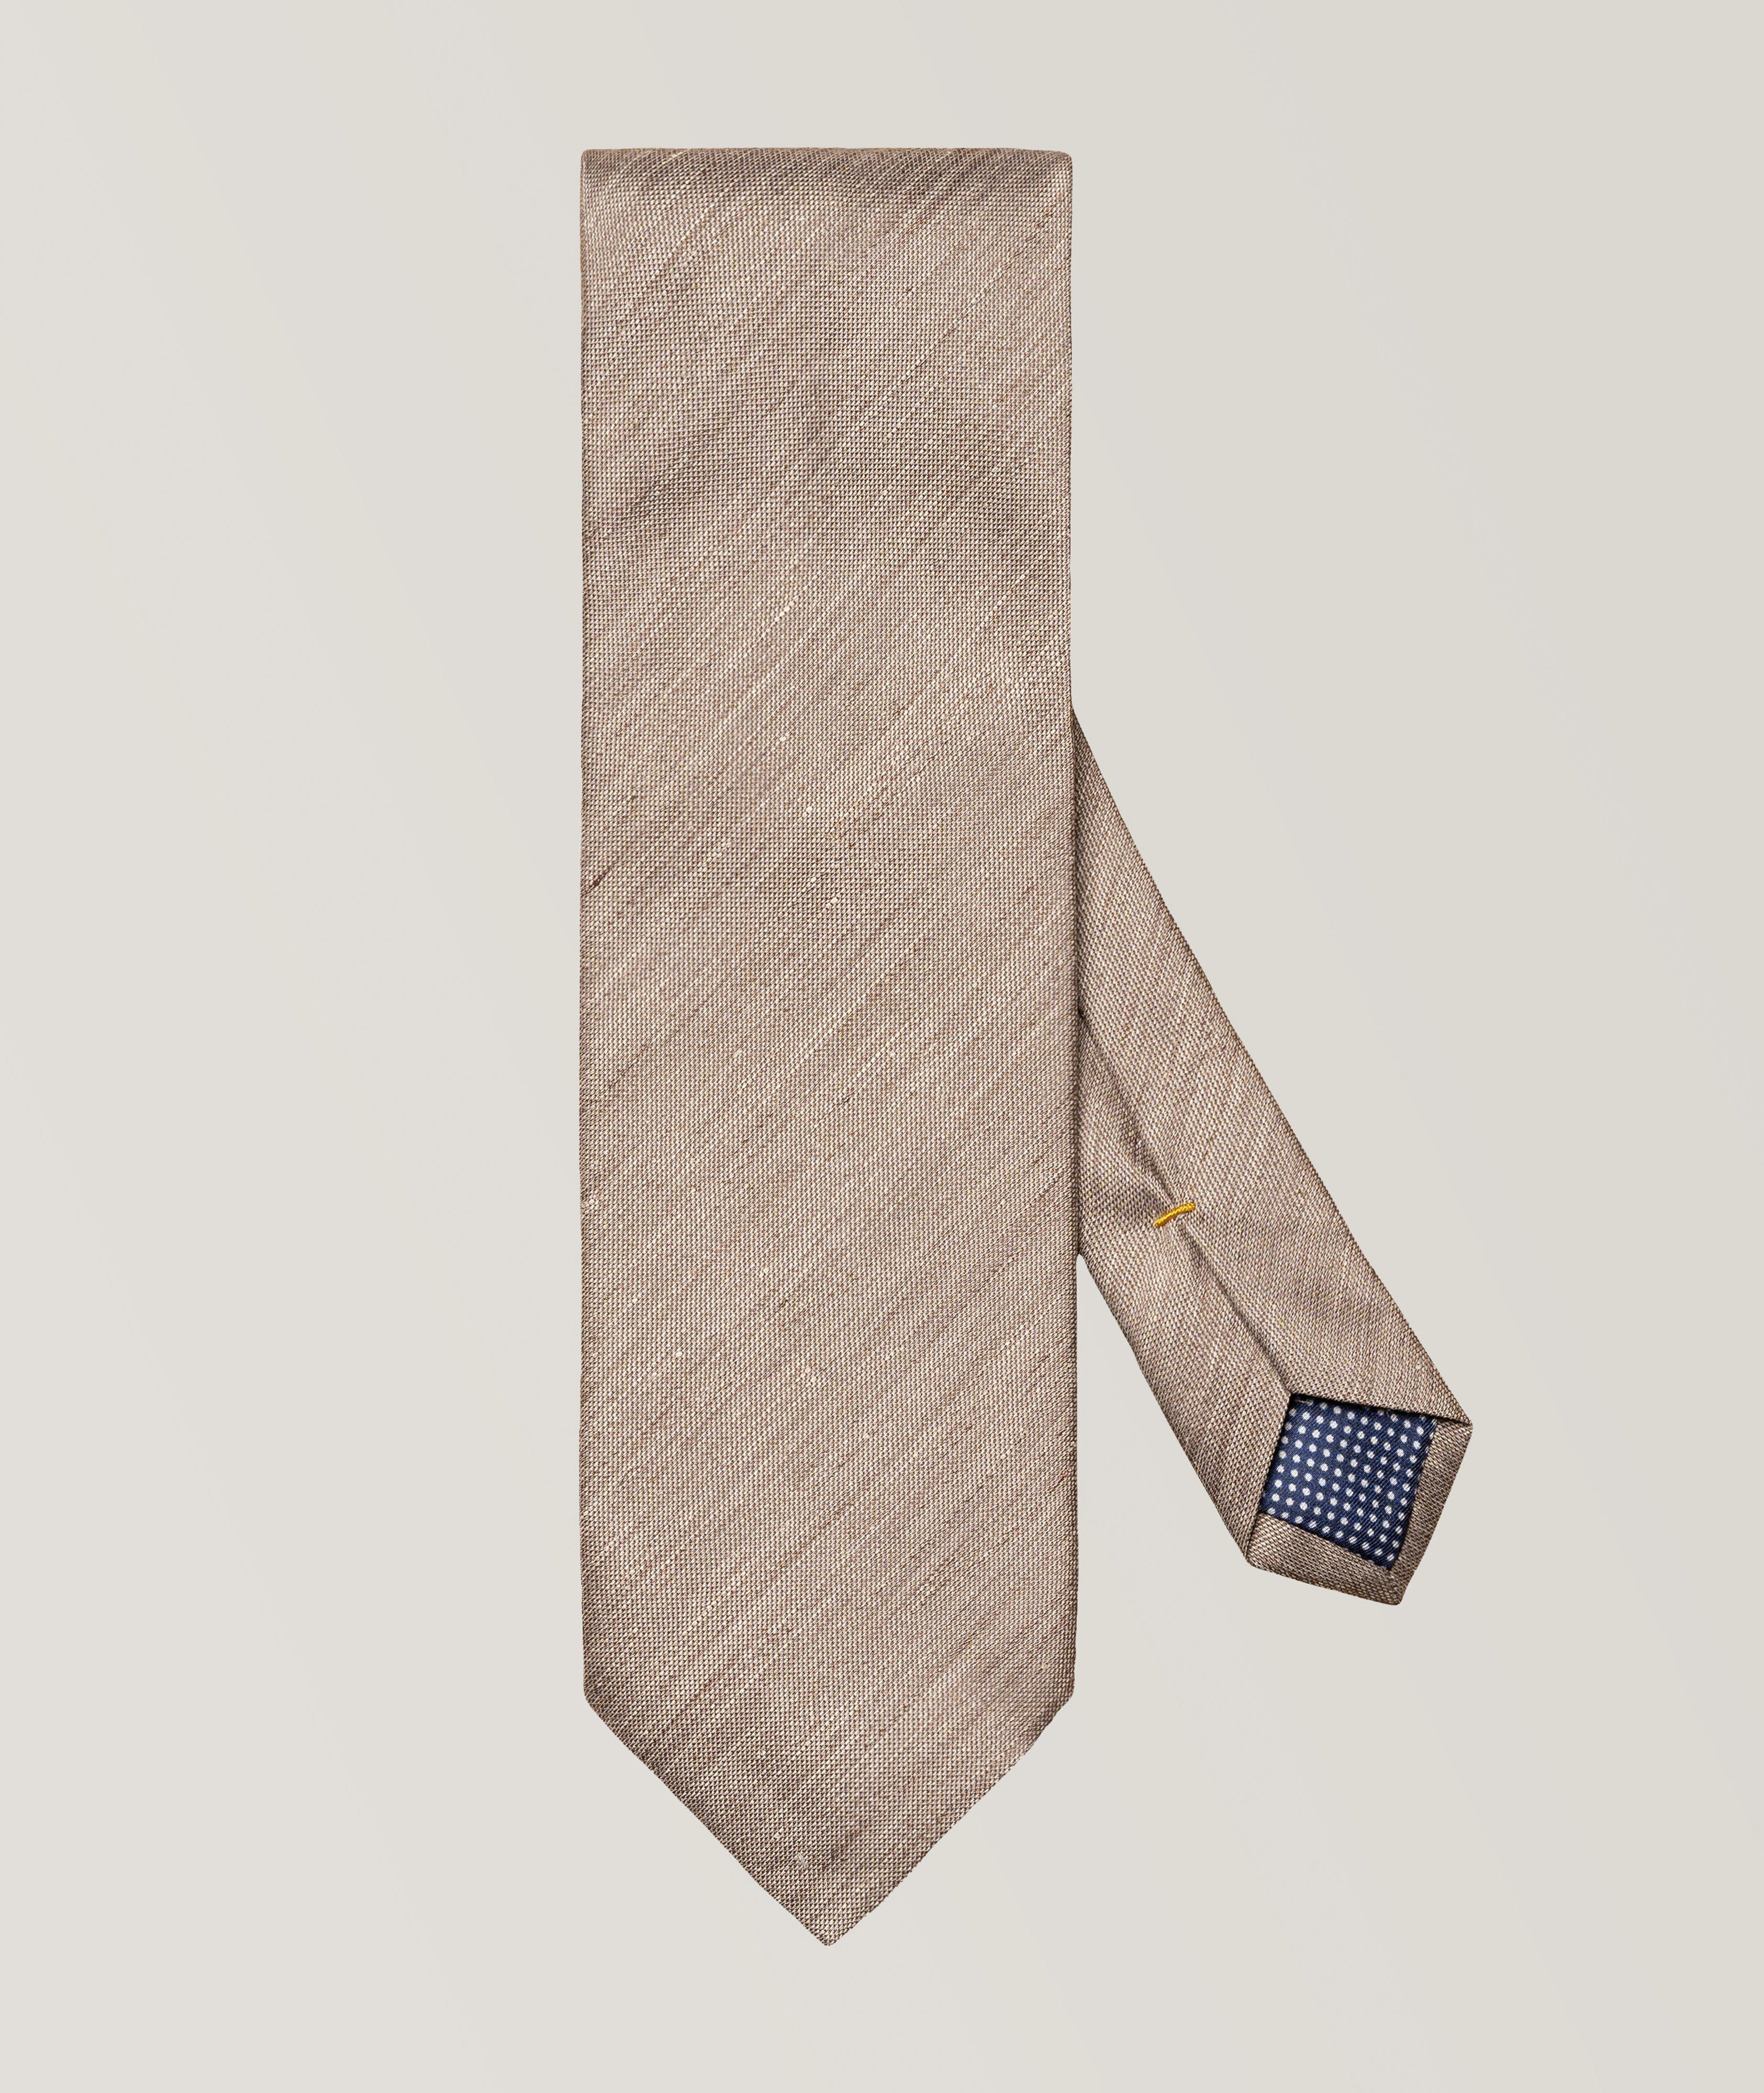 Cravate unie en soie et en lin image 0